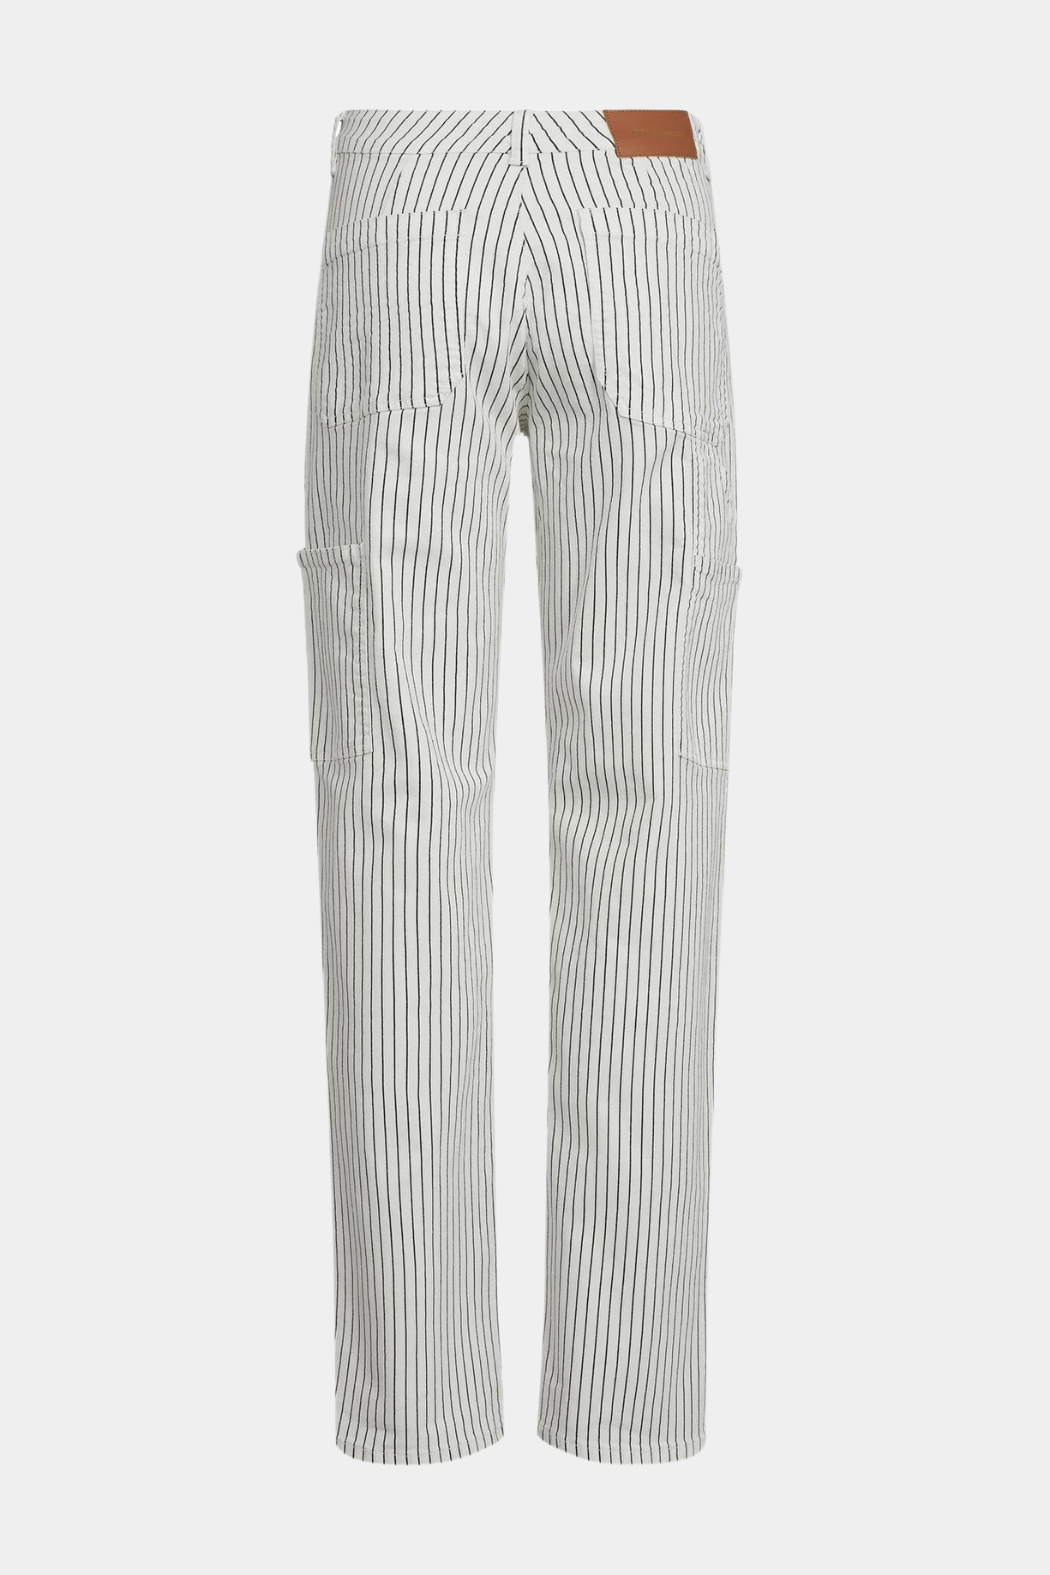 Sofie Schnoor - trousers, white – Butik Visholm